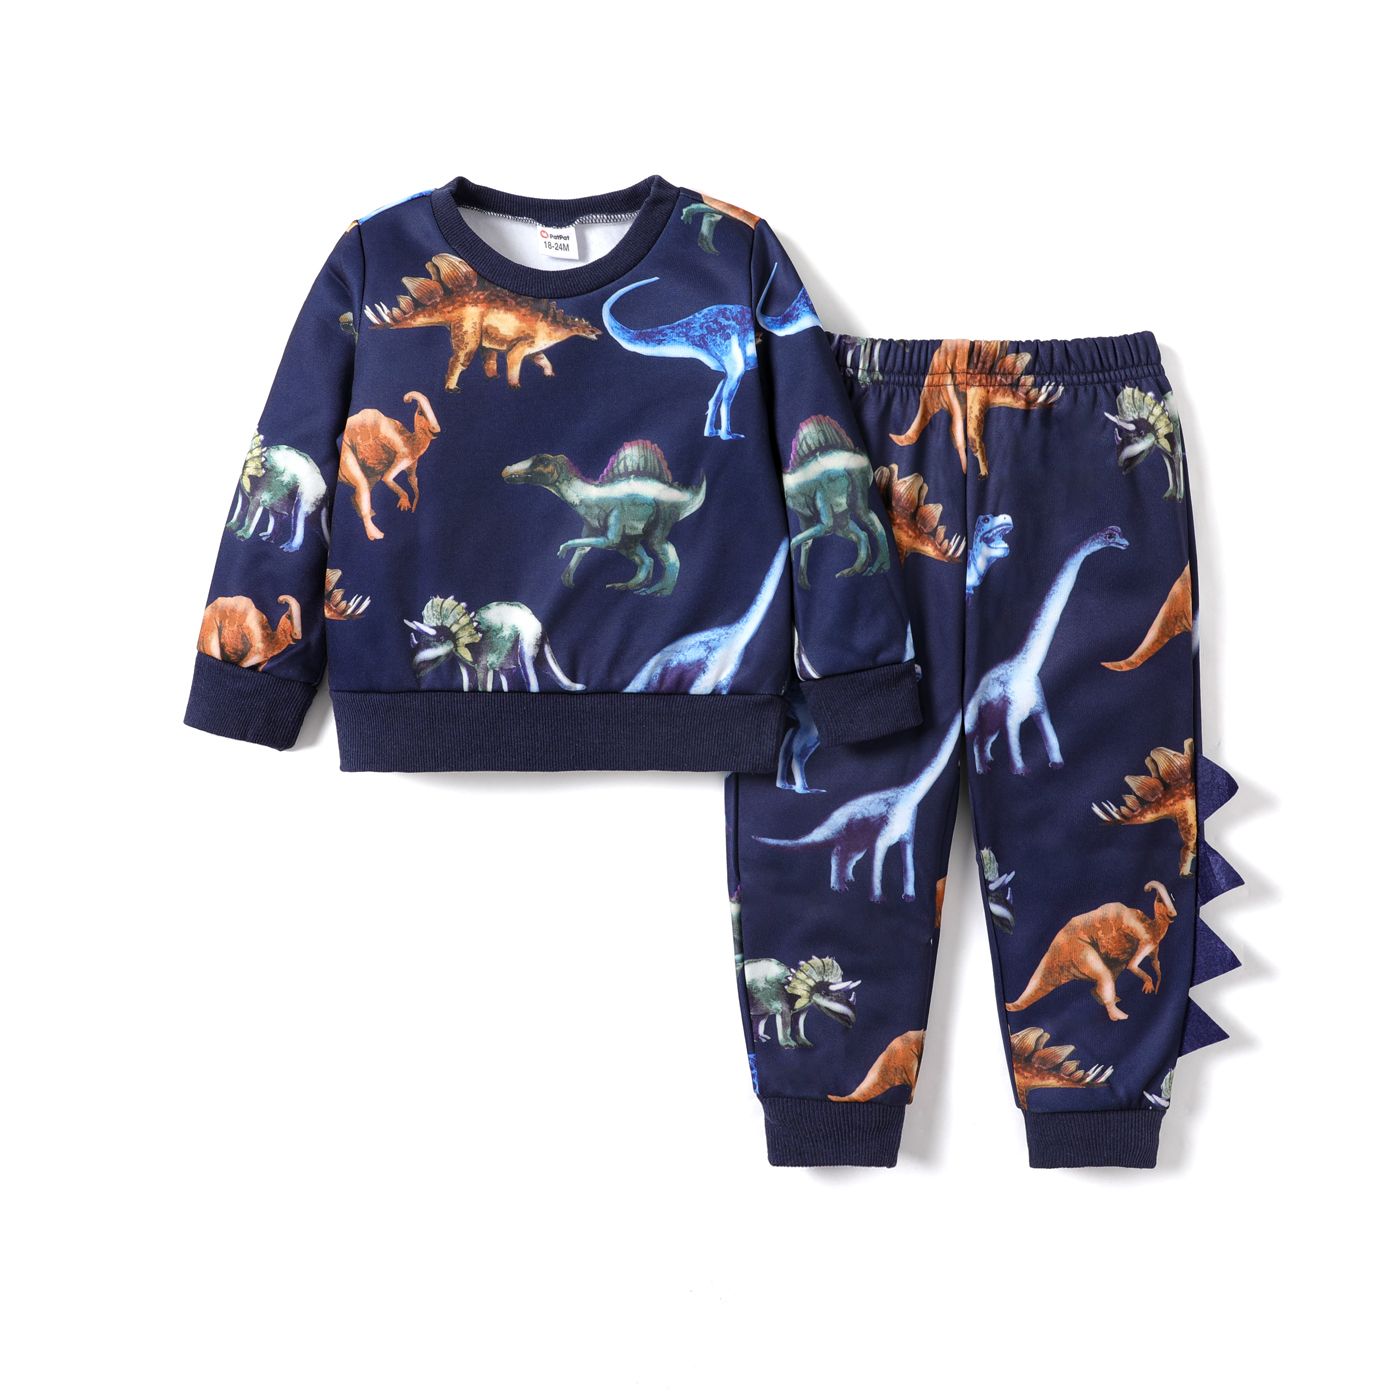 2件 男童 動物圖案&恐龍 幼童套裝